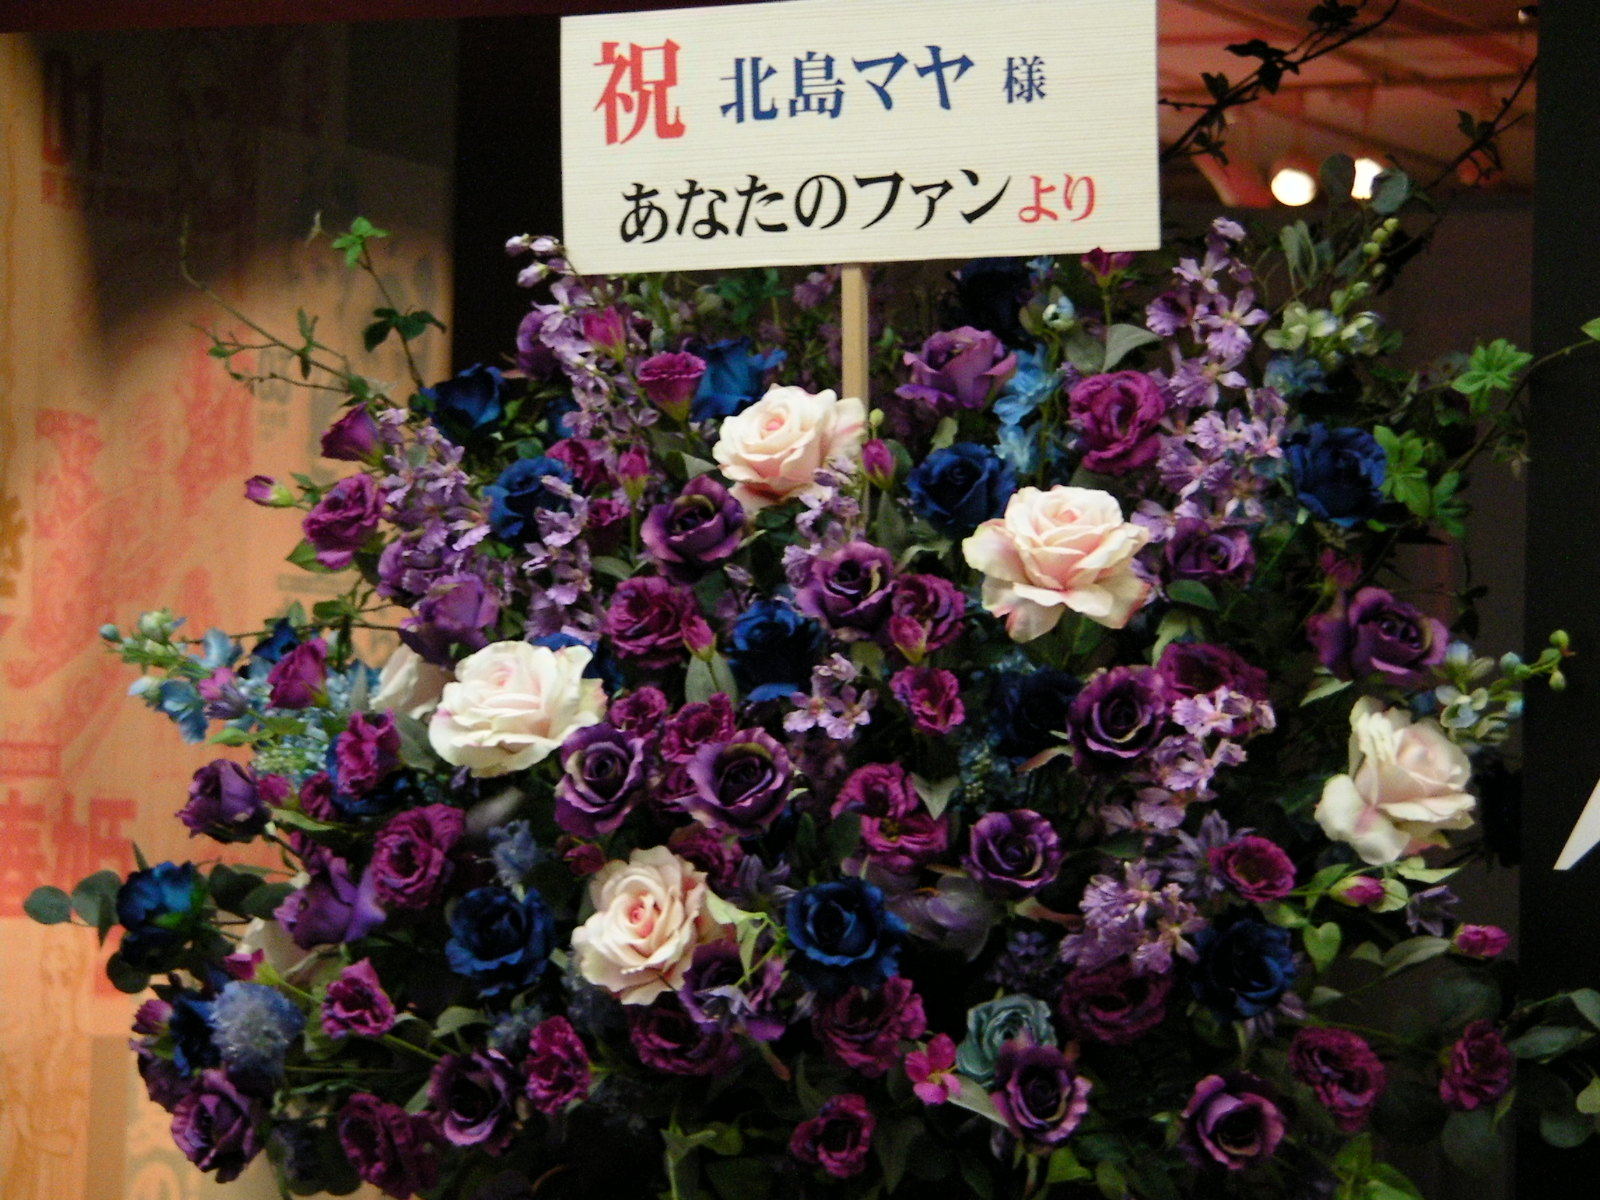 会場入り口には紫のバラを飾る粋な演出